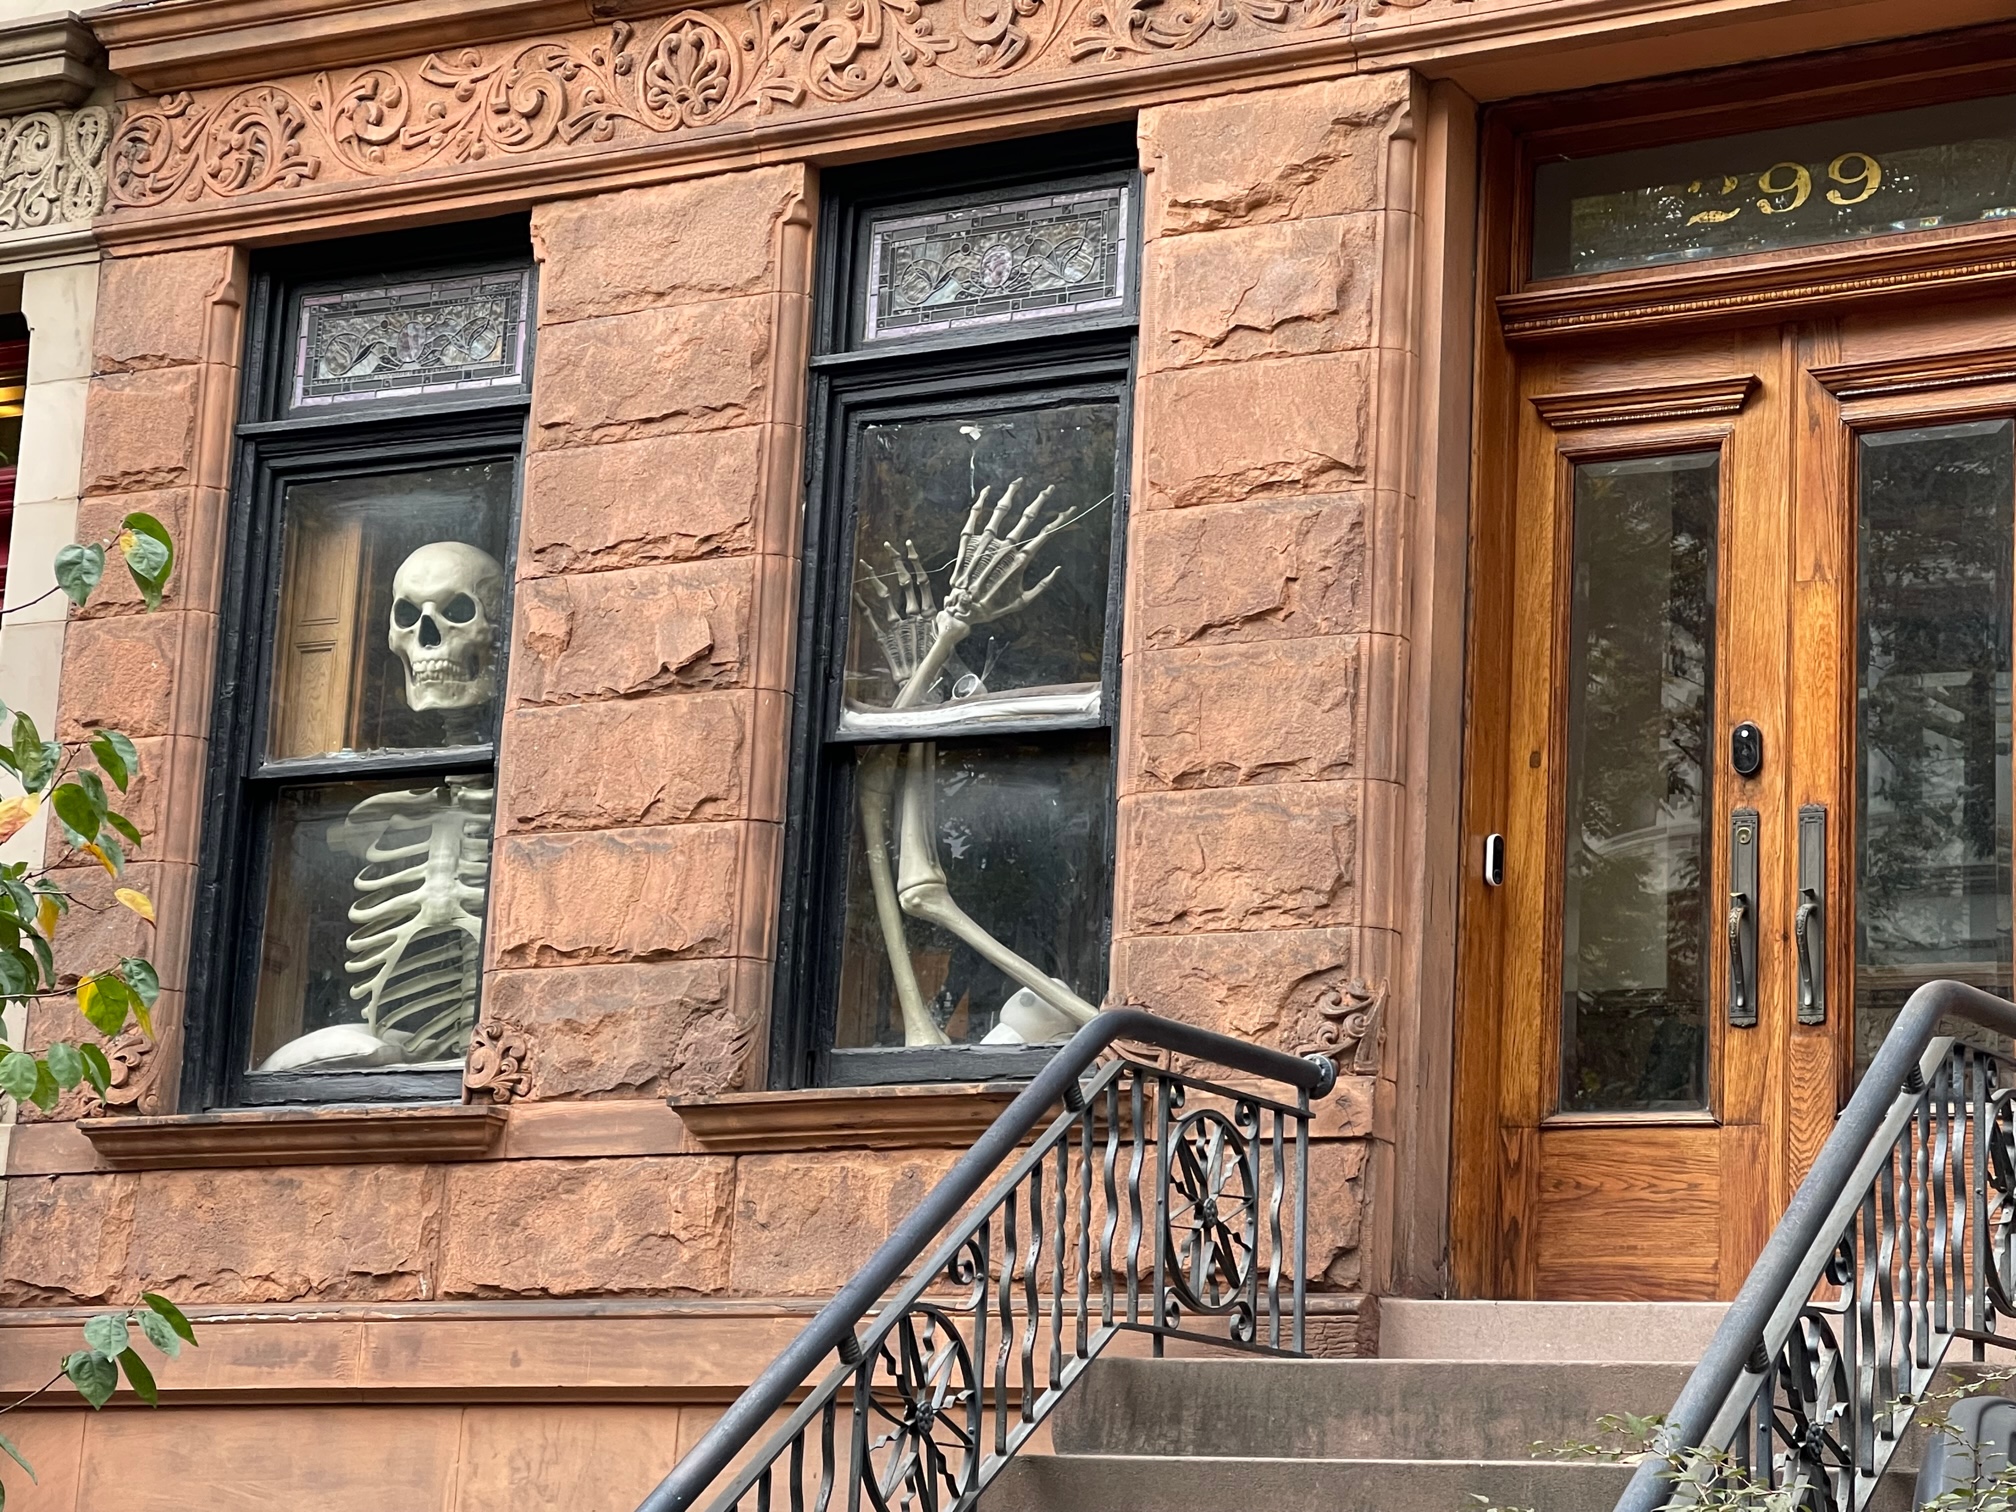 02 skeletons lurking in window